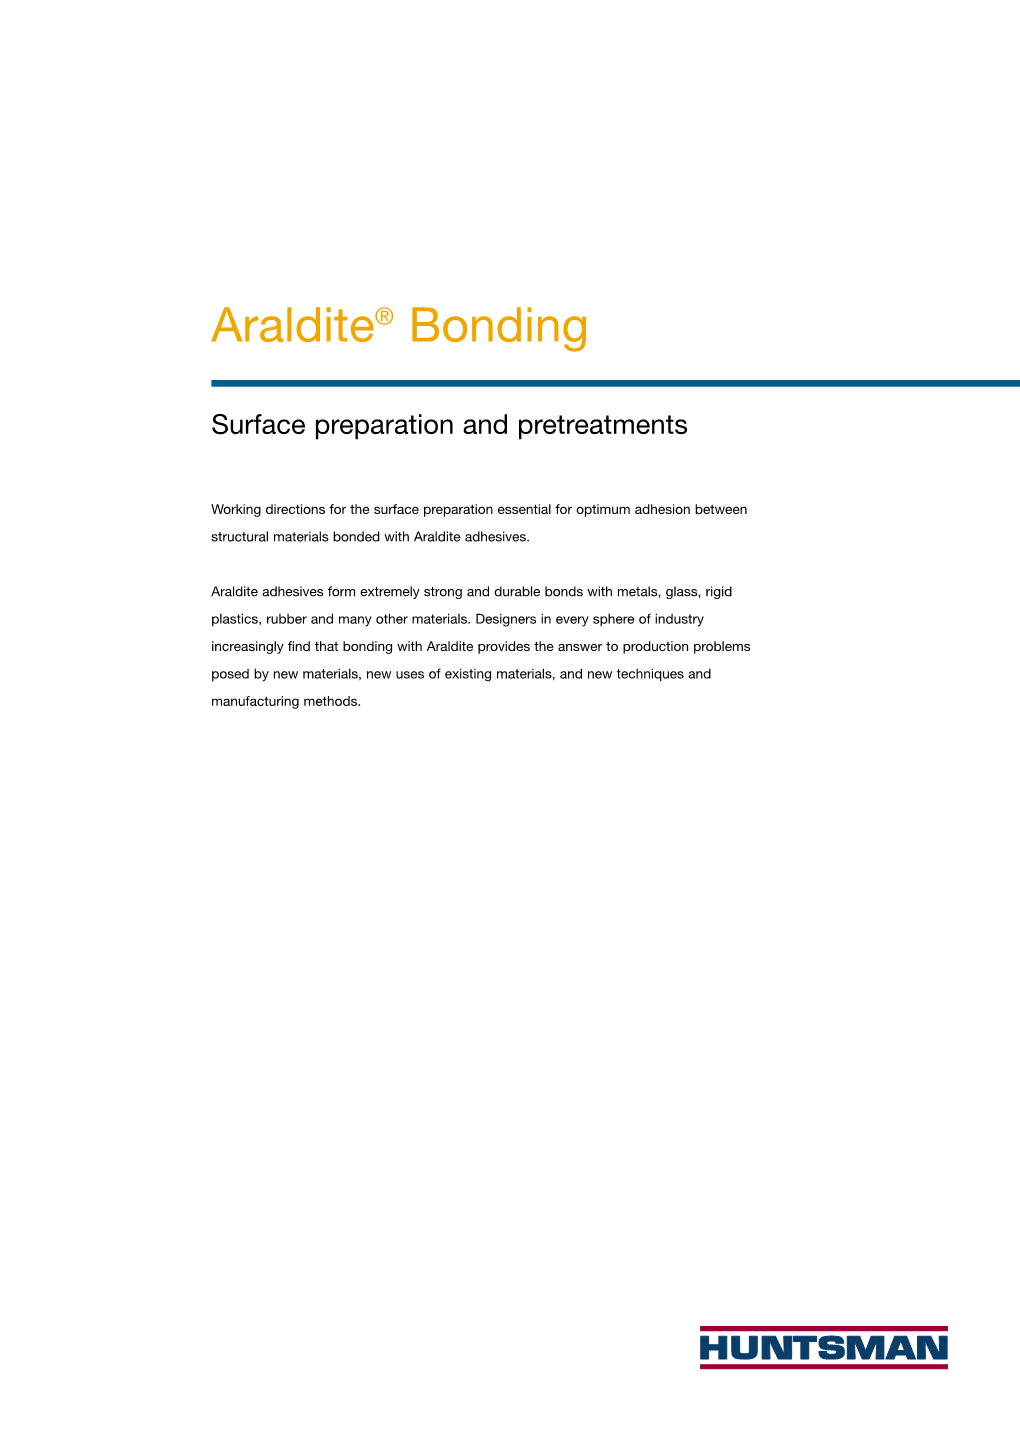 Araldite® Bonding